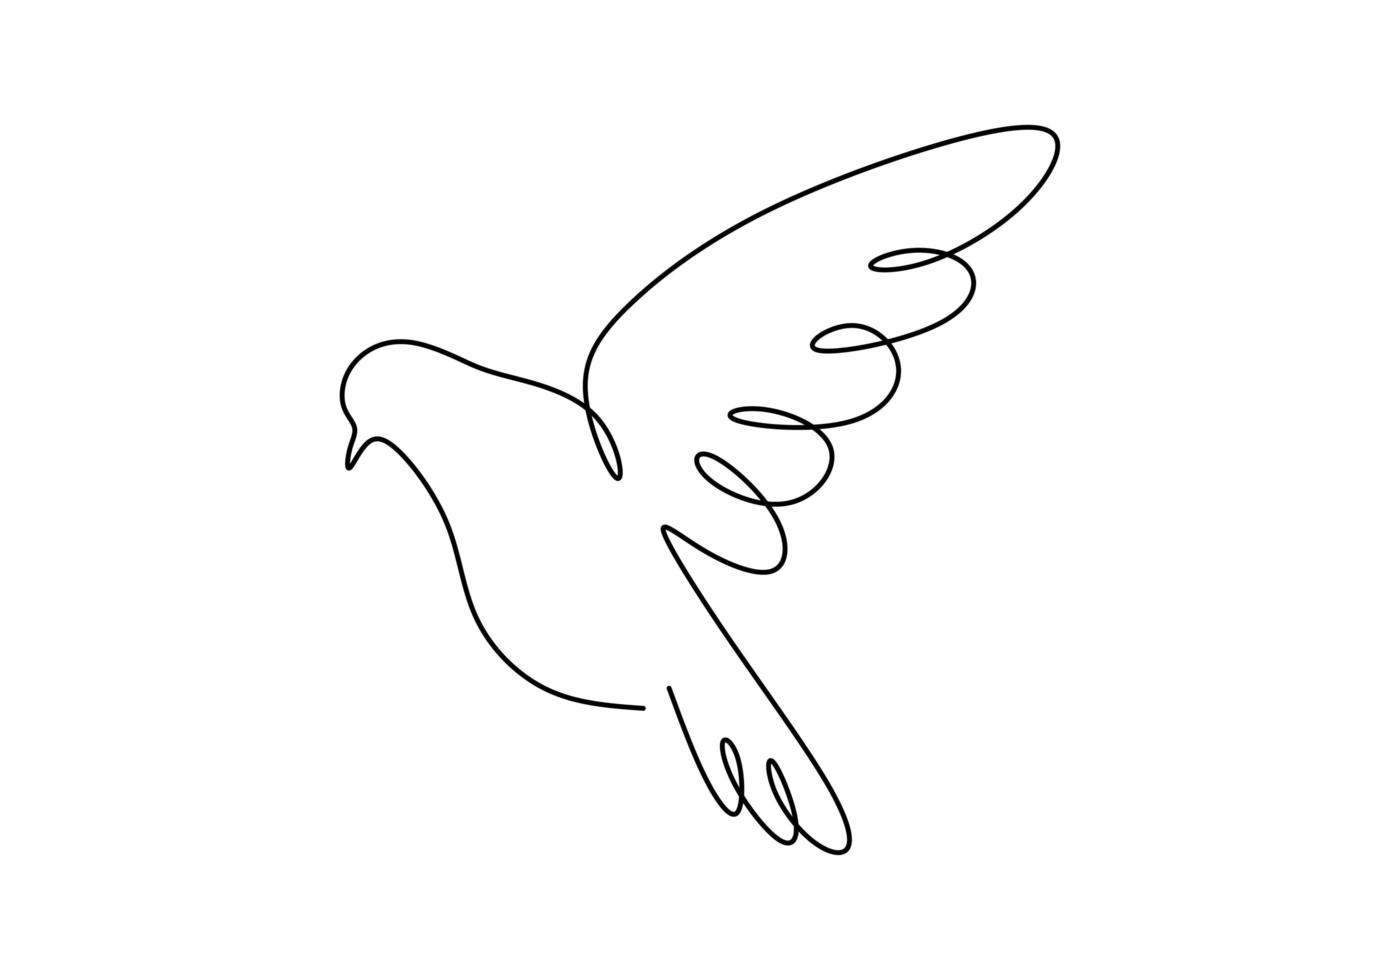 mergulhou um desenho de linha, animal pássaro desenhado à mão contínua voando. bom para cartaz, logotipo, emblema e banner. vetor